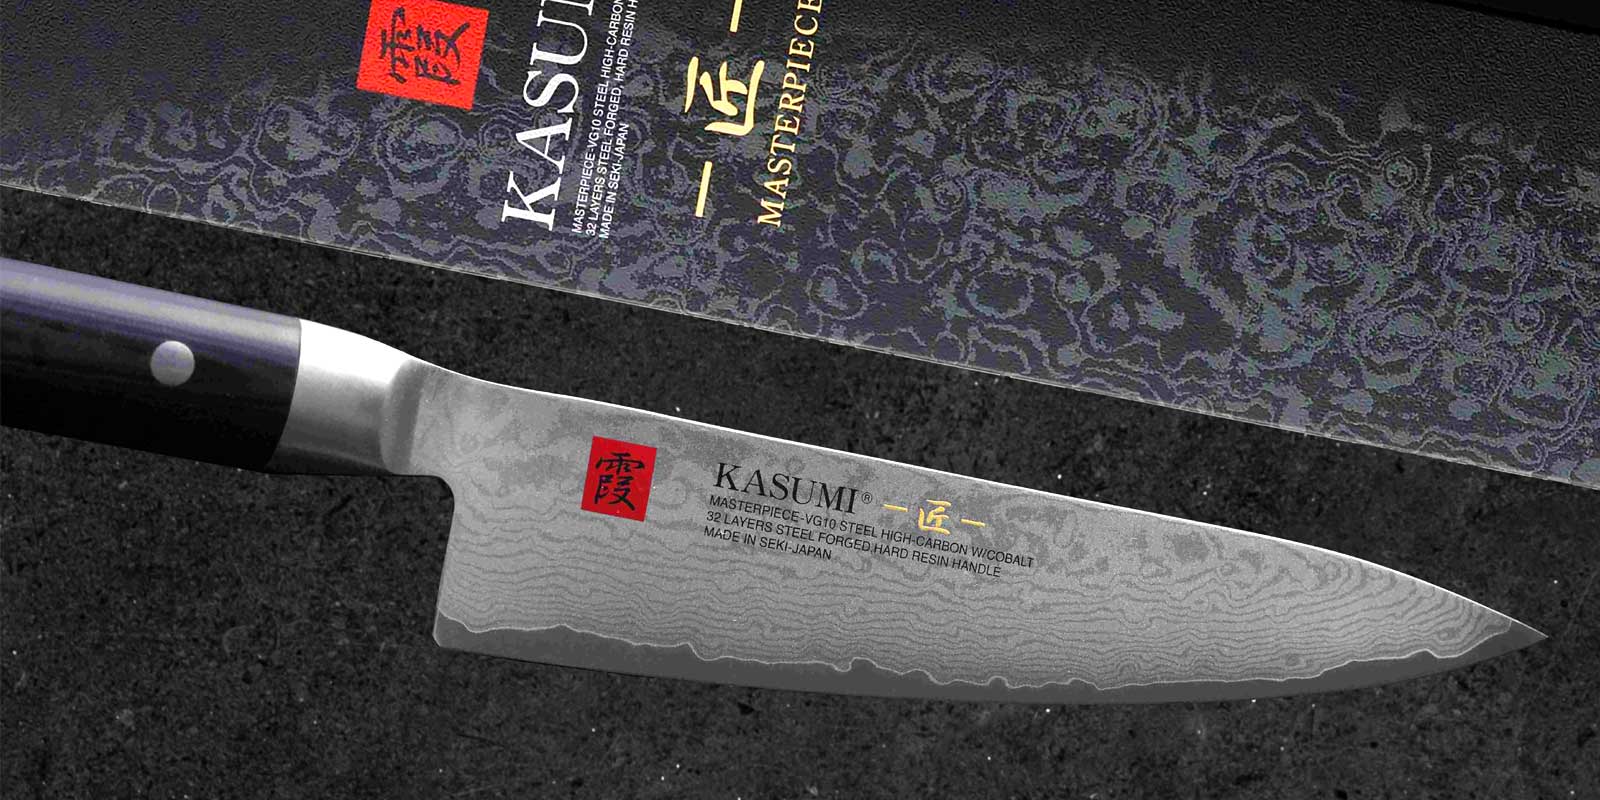 Kasumi-mes De middenlaag van de KASUMI MP-messen is gemaakt van het beste Japanse VG10-staal ? met kobalt en een hoger koolstofgehalte, dat exclusief is ontwikkeld voor de productie van zeer hoogwaardige keukenmessen. Na het smeden worden de bladen opnieuw verwarmd tot ongeveer 800 °C, vervolgens snel weer afgekoeld en zo Rockwell uitgehard tot ongeveer 59-60 °C. De hardheid van 59-60 HRC wordt niet alleen in Japan als de optimale hardheid voor keukenmessen beschouwd. De zeer goede scherpte zorgt ervoor dat de snijkant een zeer lange levensduur heeft (snijbehoud - wordt niet zo snel bot), maar maakt ook eenvoudig opnieuw slijpen mogelijk met de SUMIKAMA-wetstenen.